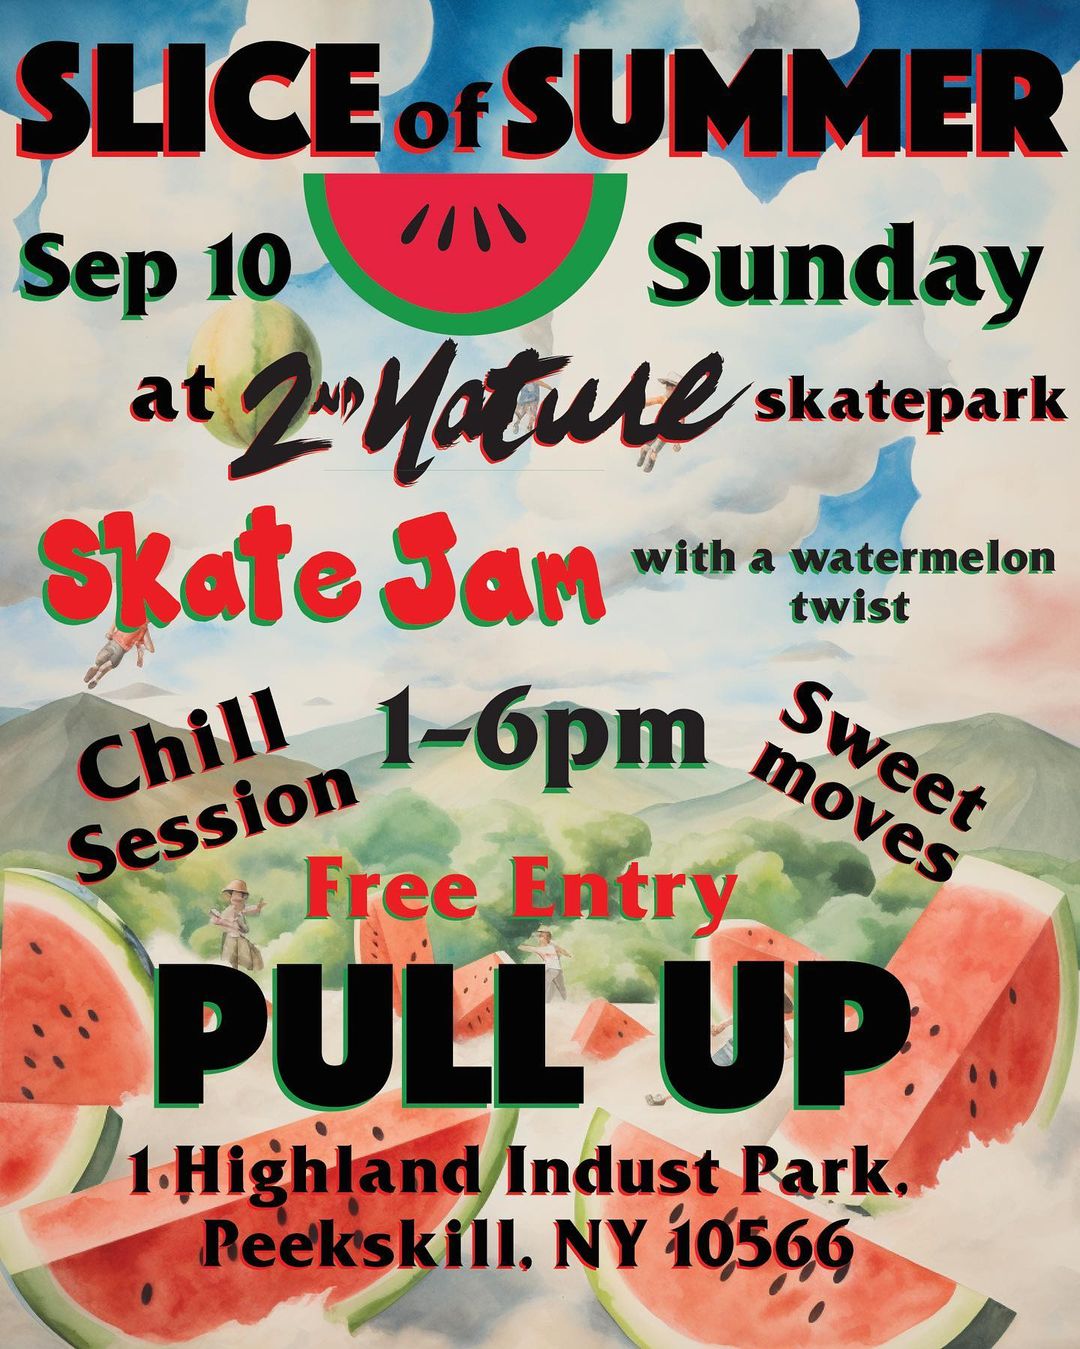 Flier for Slice of Summer at 2nd Nature Skatepark